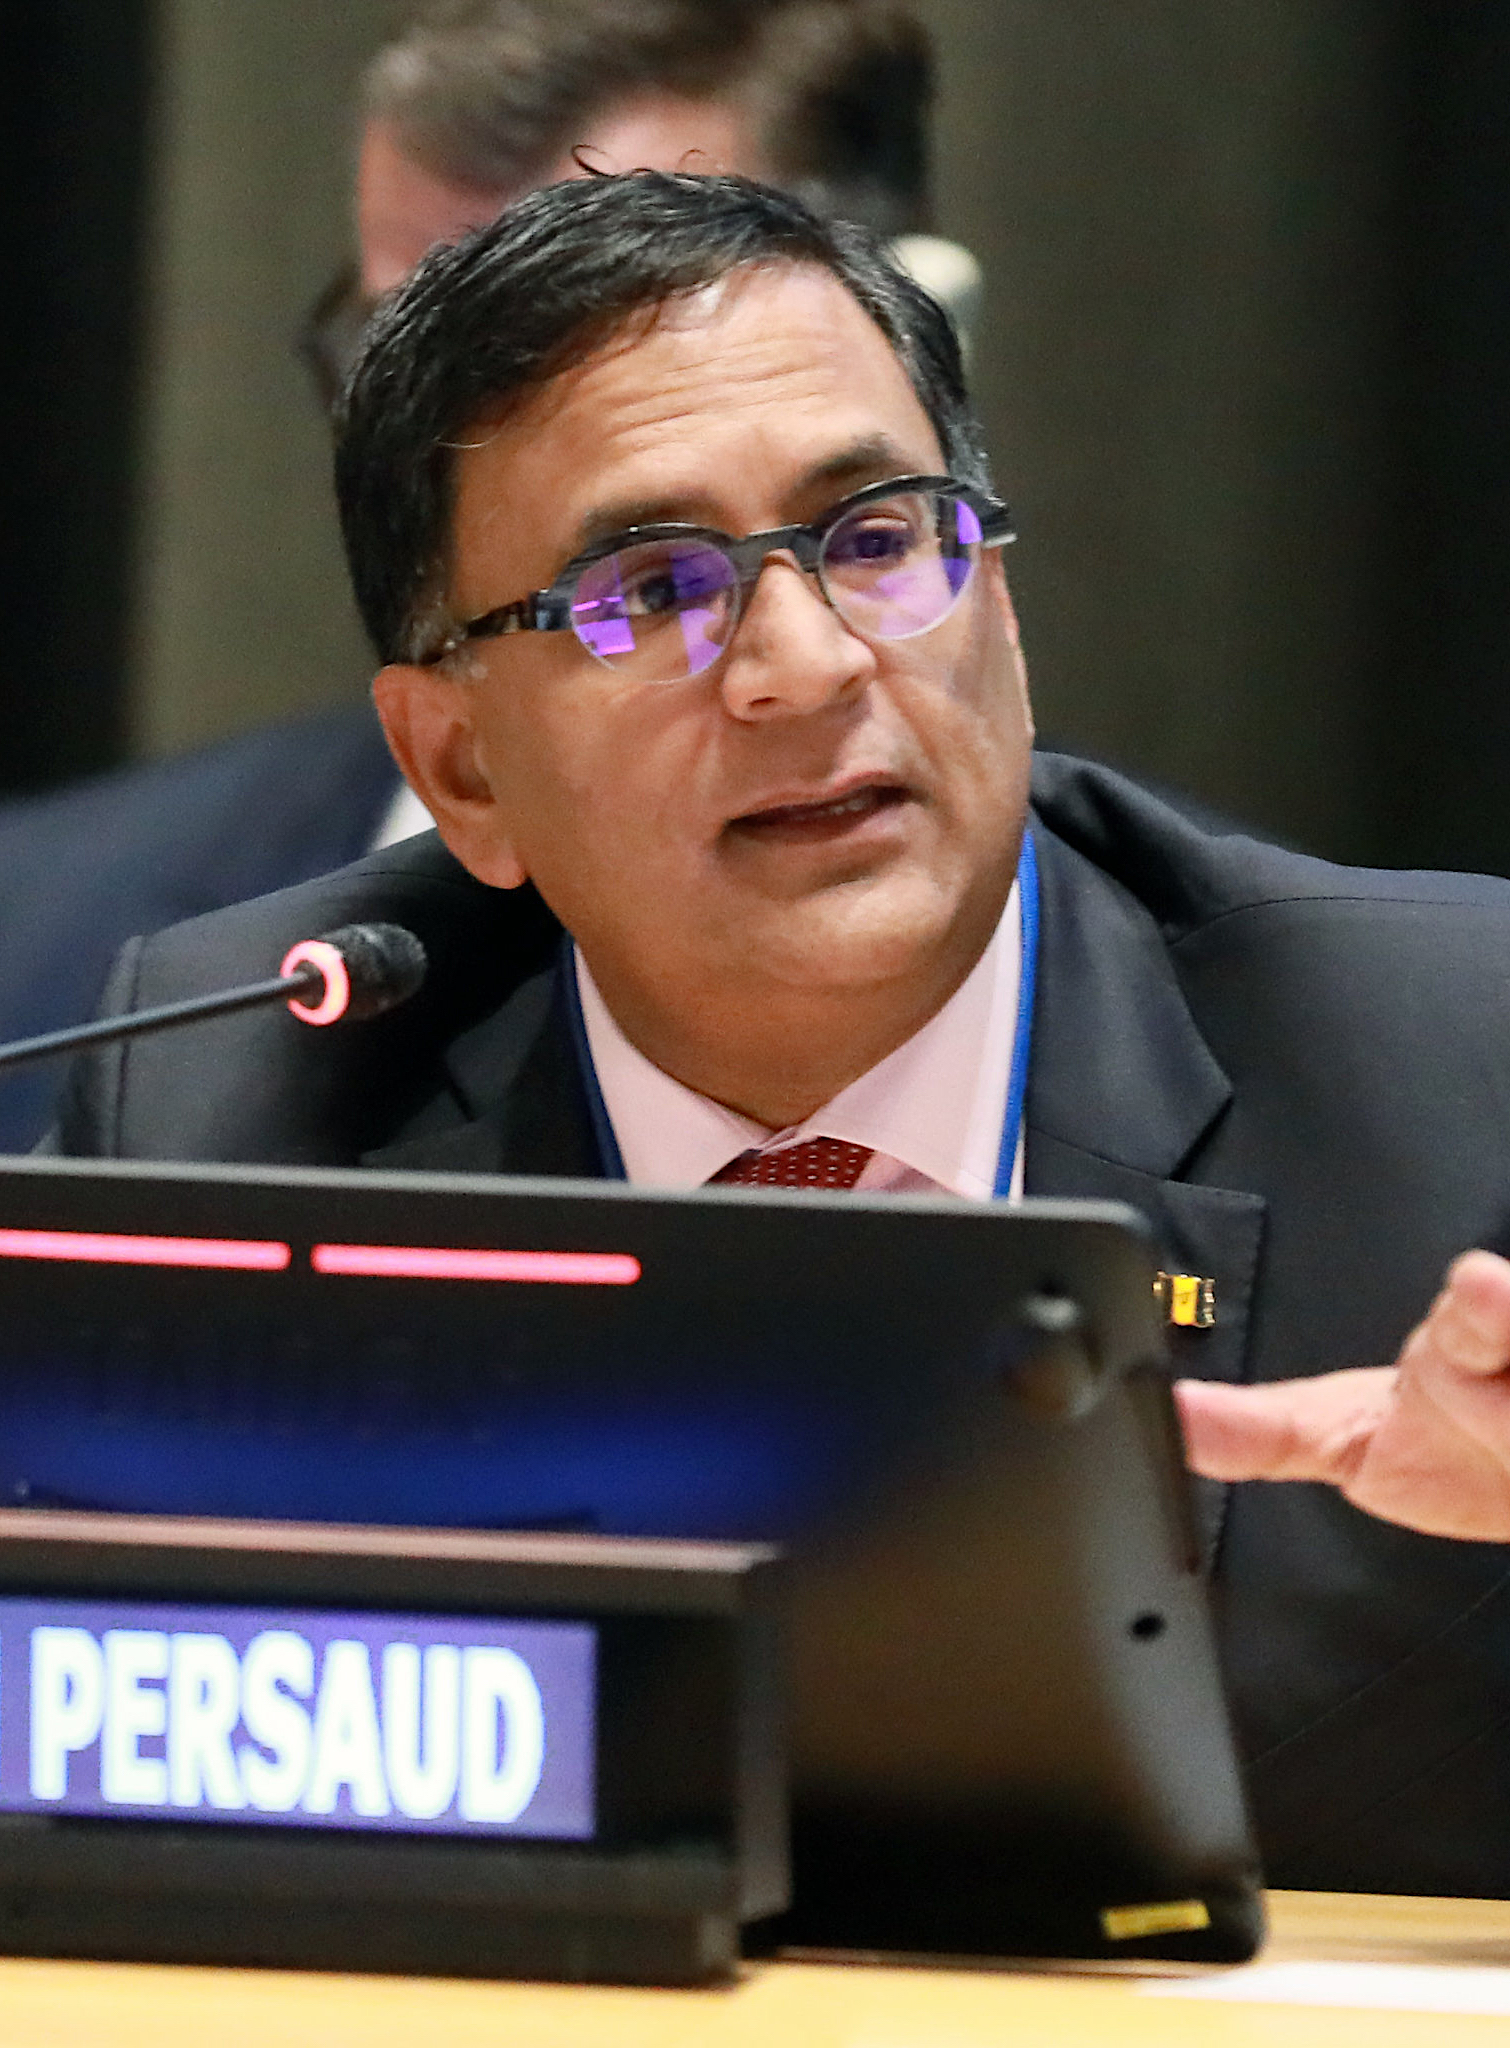 Avinash Persaud speaks at a meeting